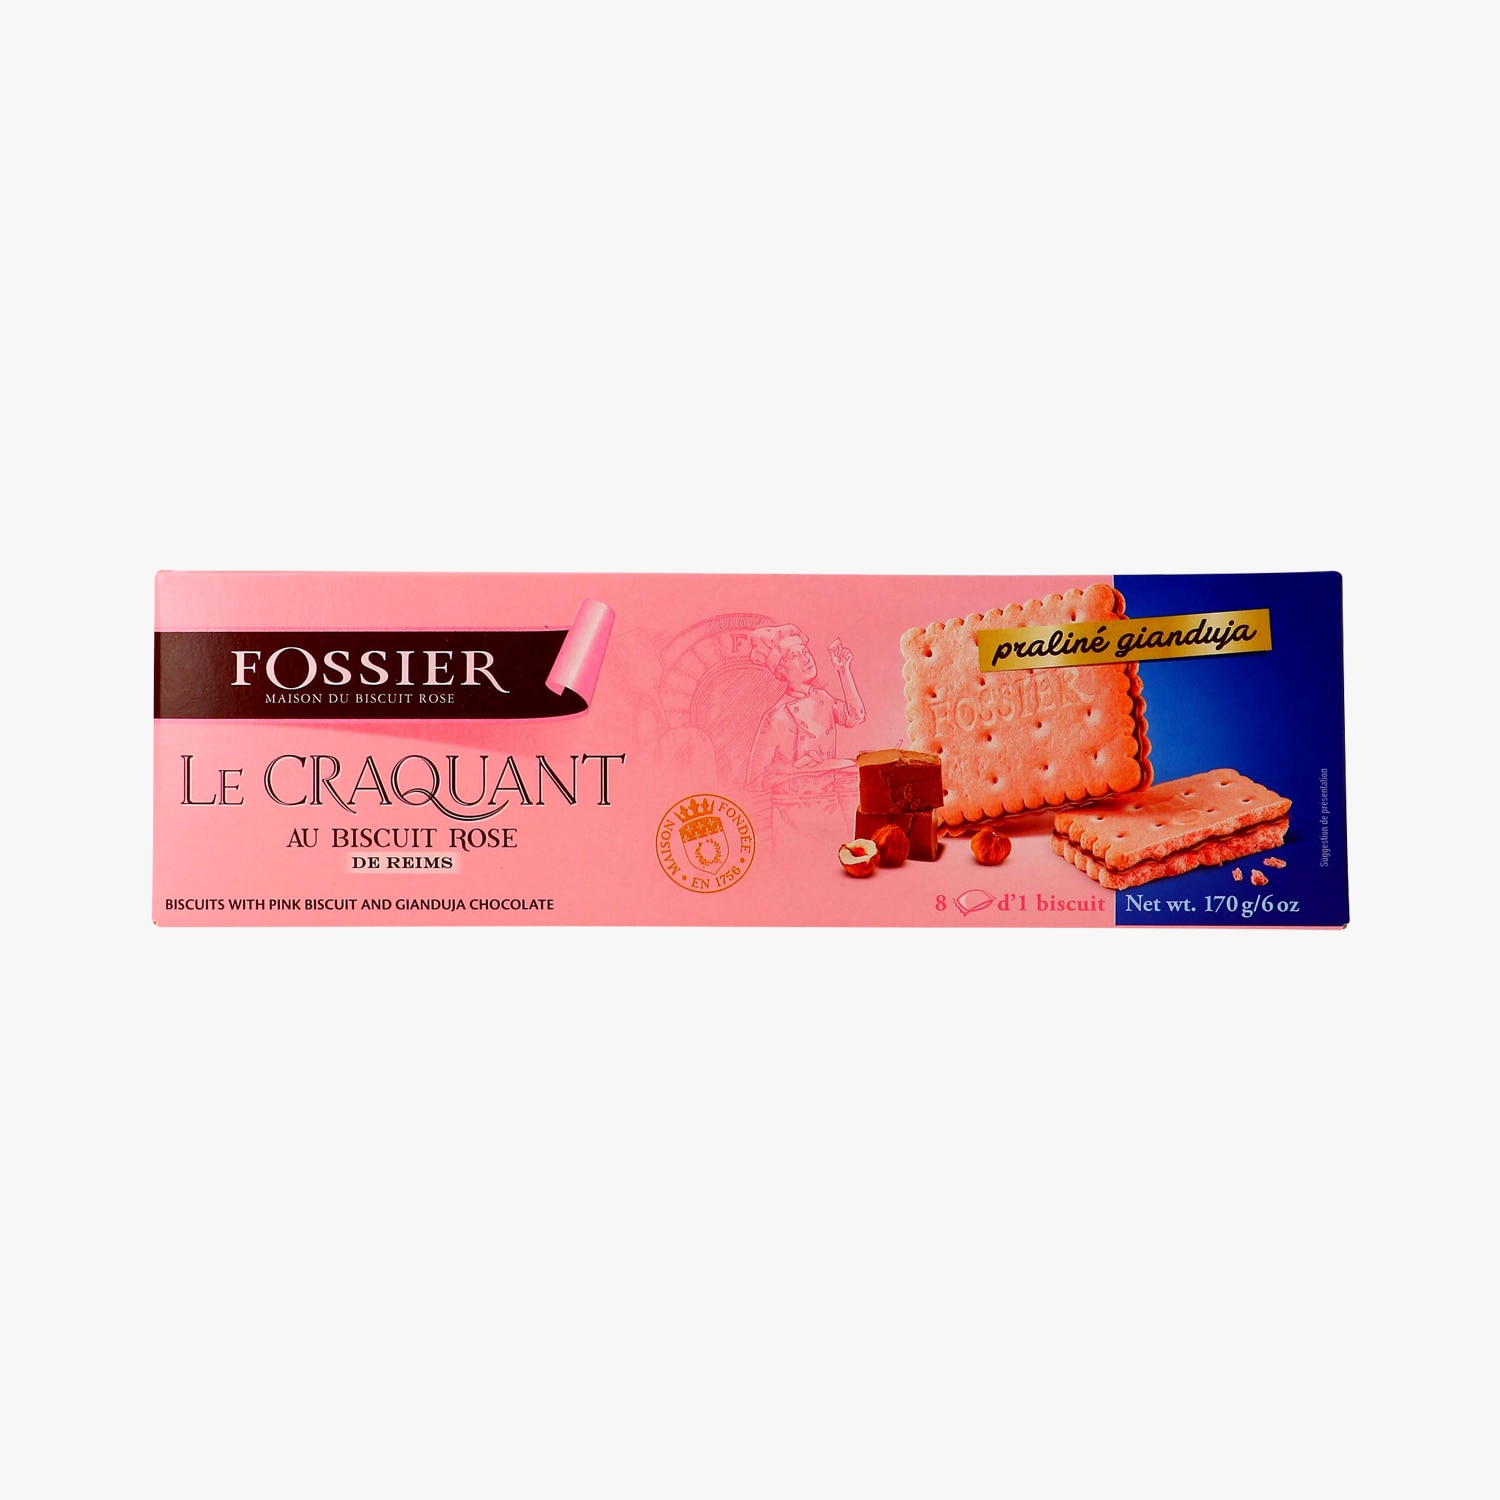 Les Crayères” biscuit rose de Reims, sorbet pamplemousse, gelée de